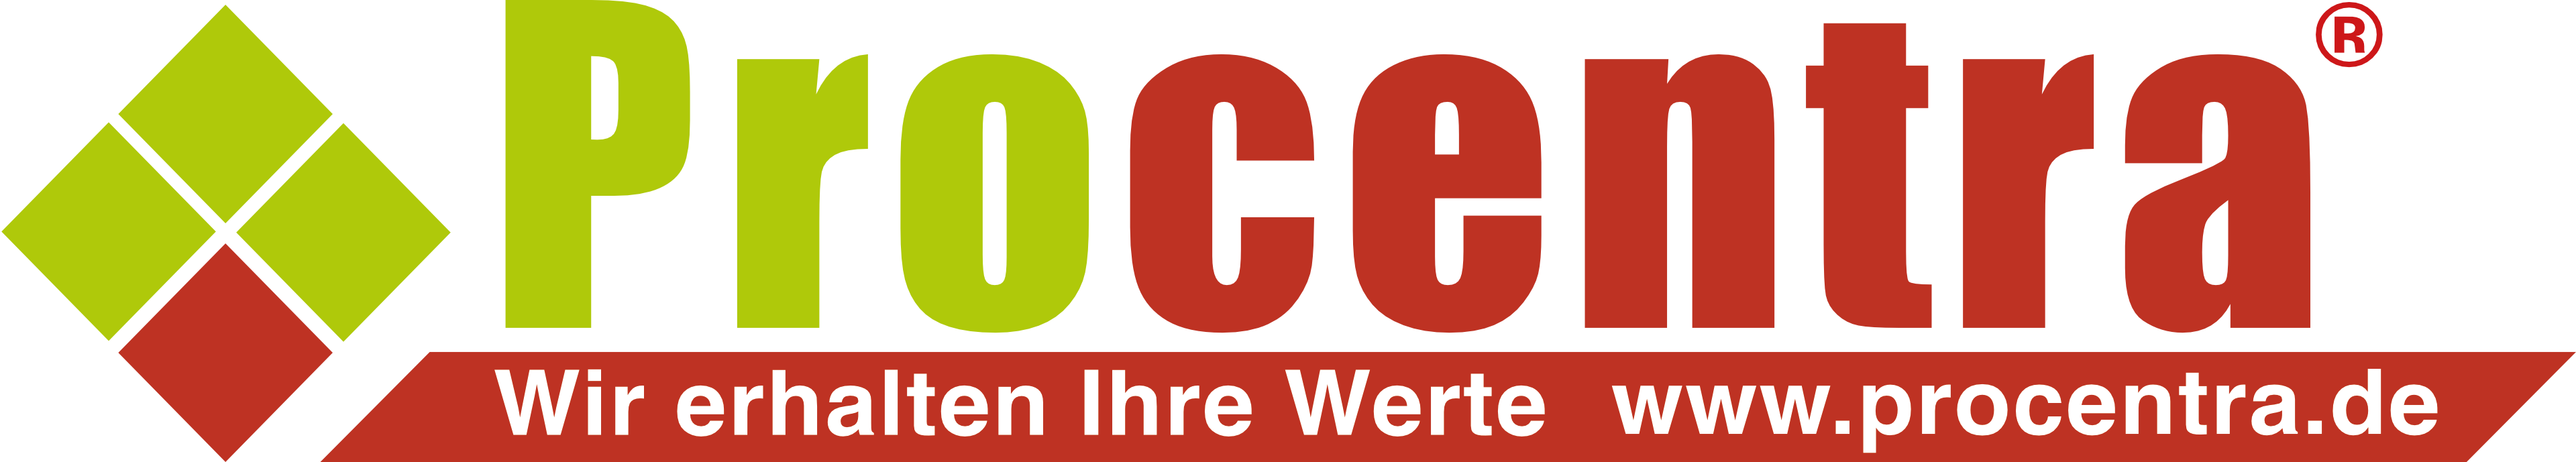 Procentra Schadensanierung GmbH